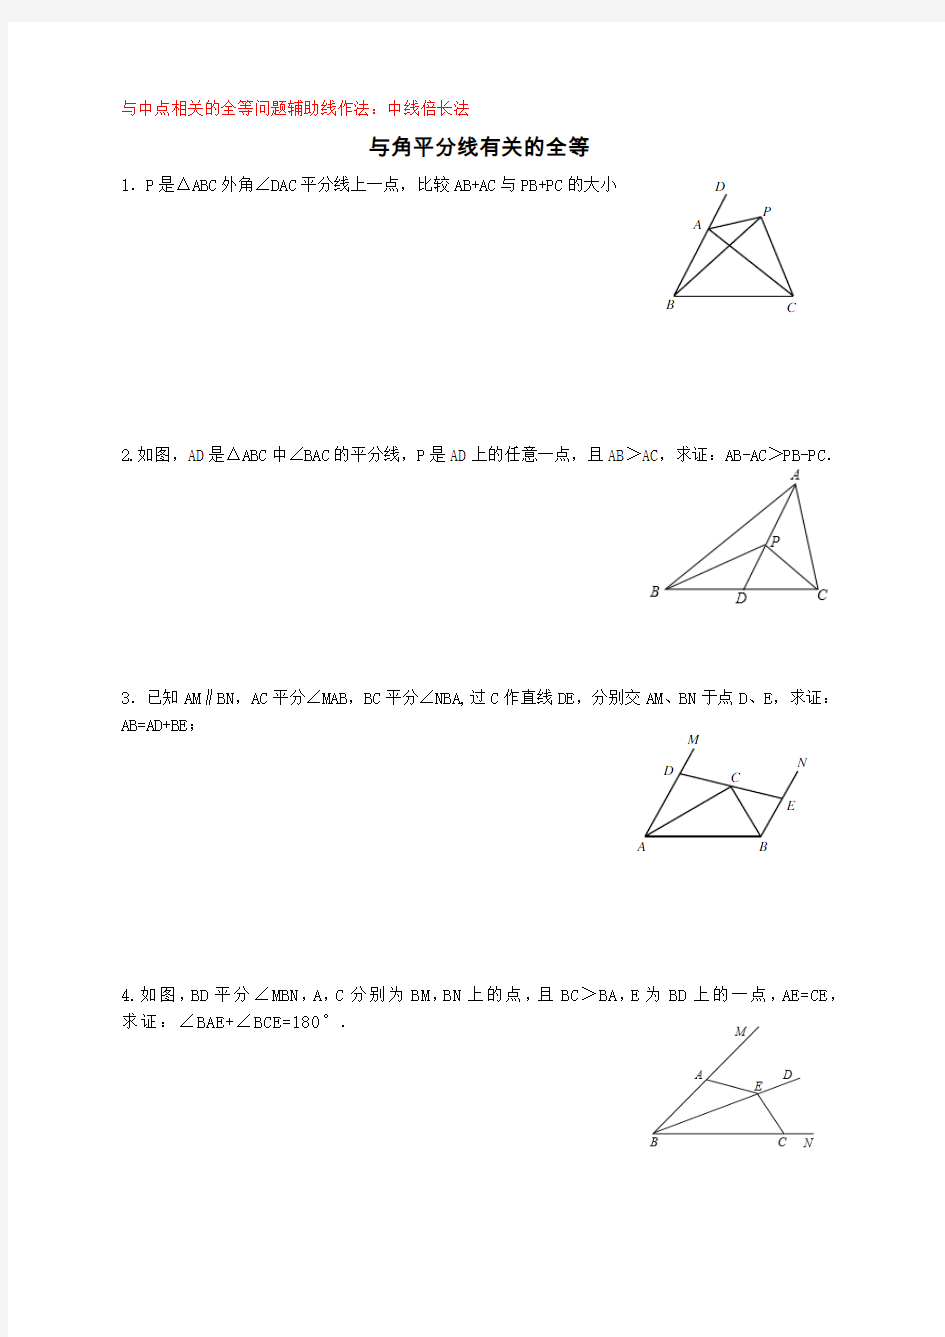 与中点、角平分线有关的全等三角形证明题(辅助线作法总结)